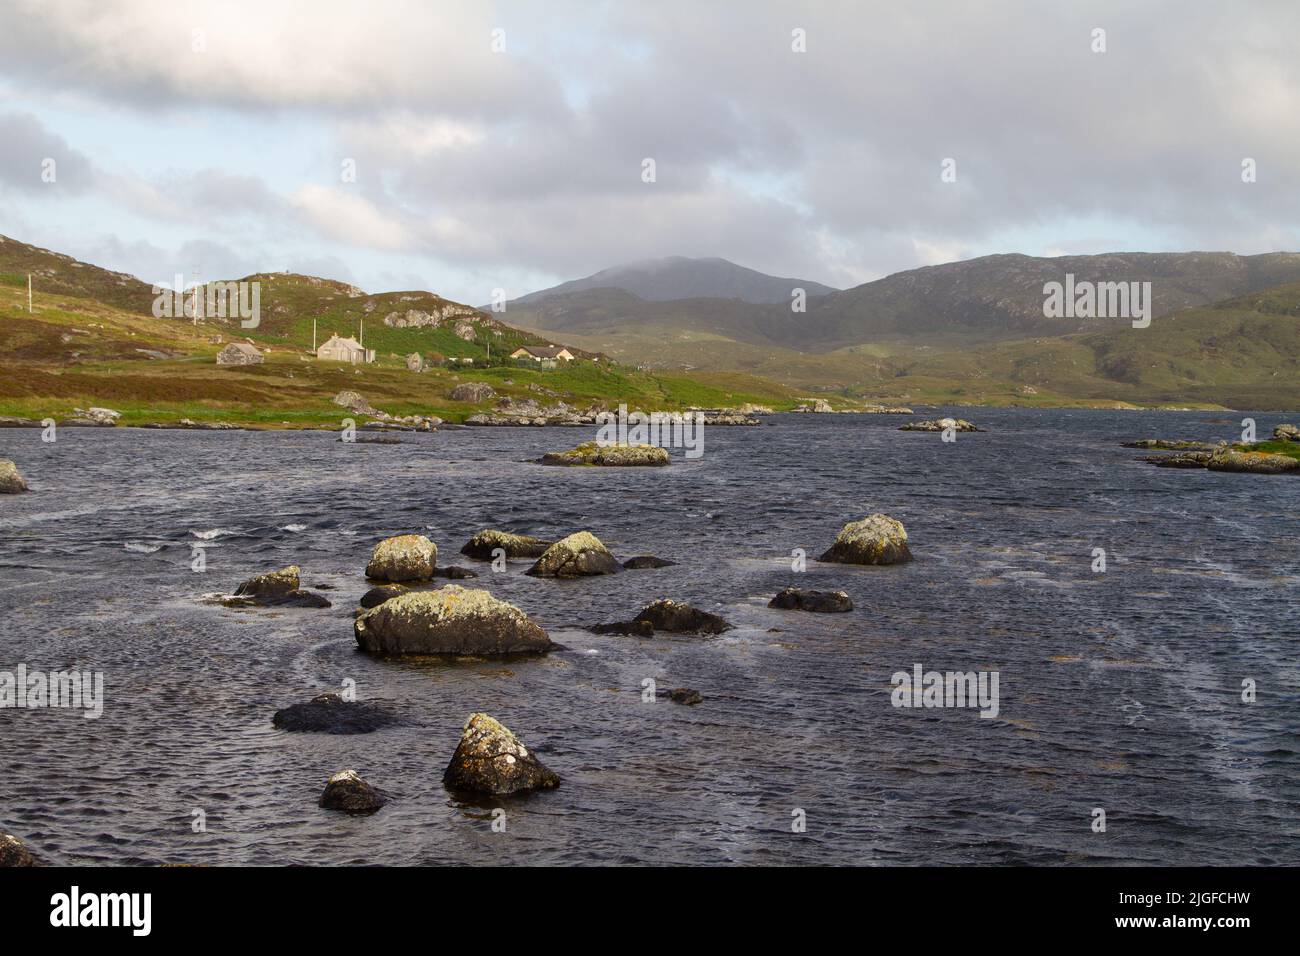 Tarde de verano en las orillas del lago Eynort, Uist del Sur, Hébridas/Islas del Oeste, Escocia Foto de stock